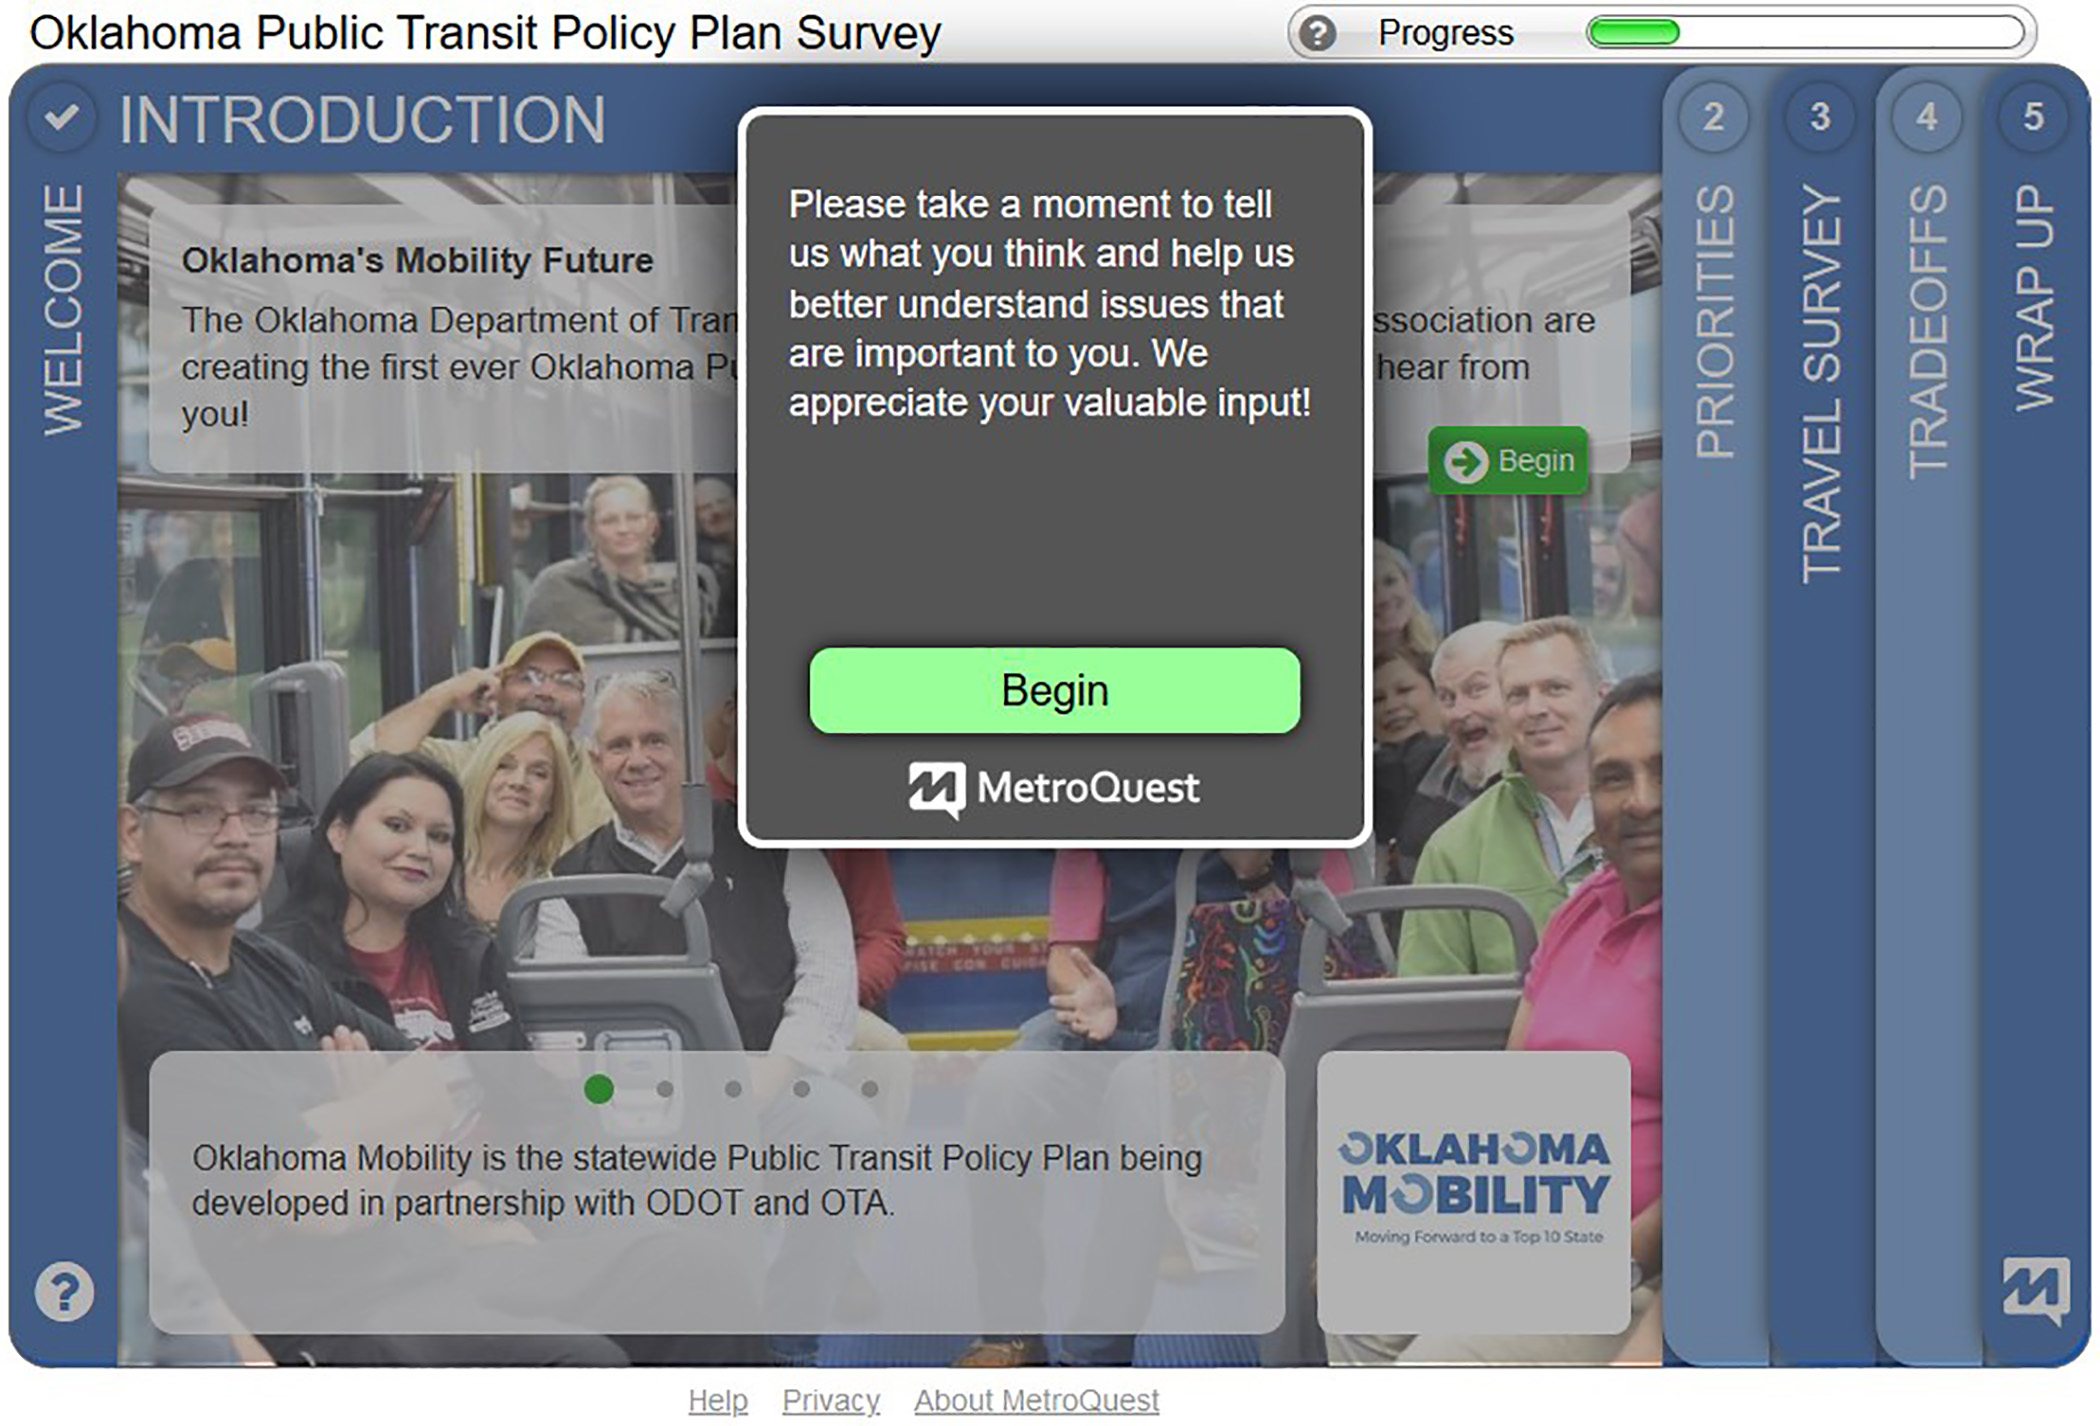 Public transit survey